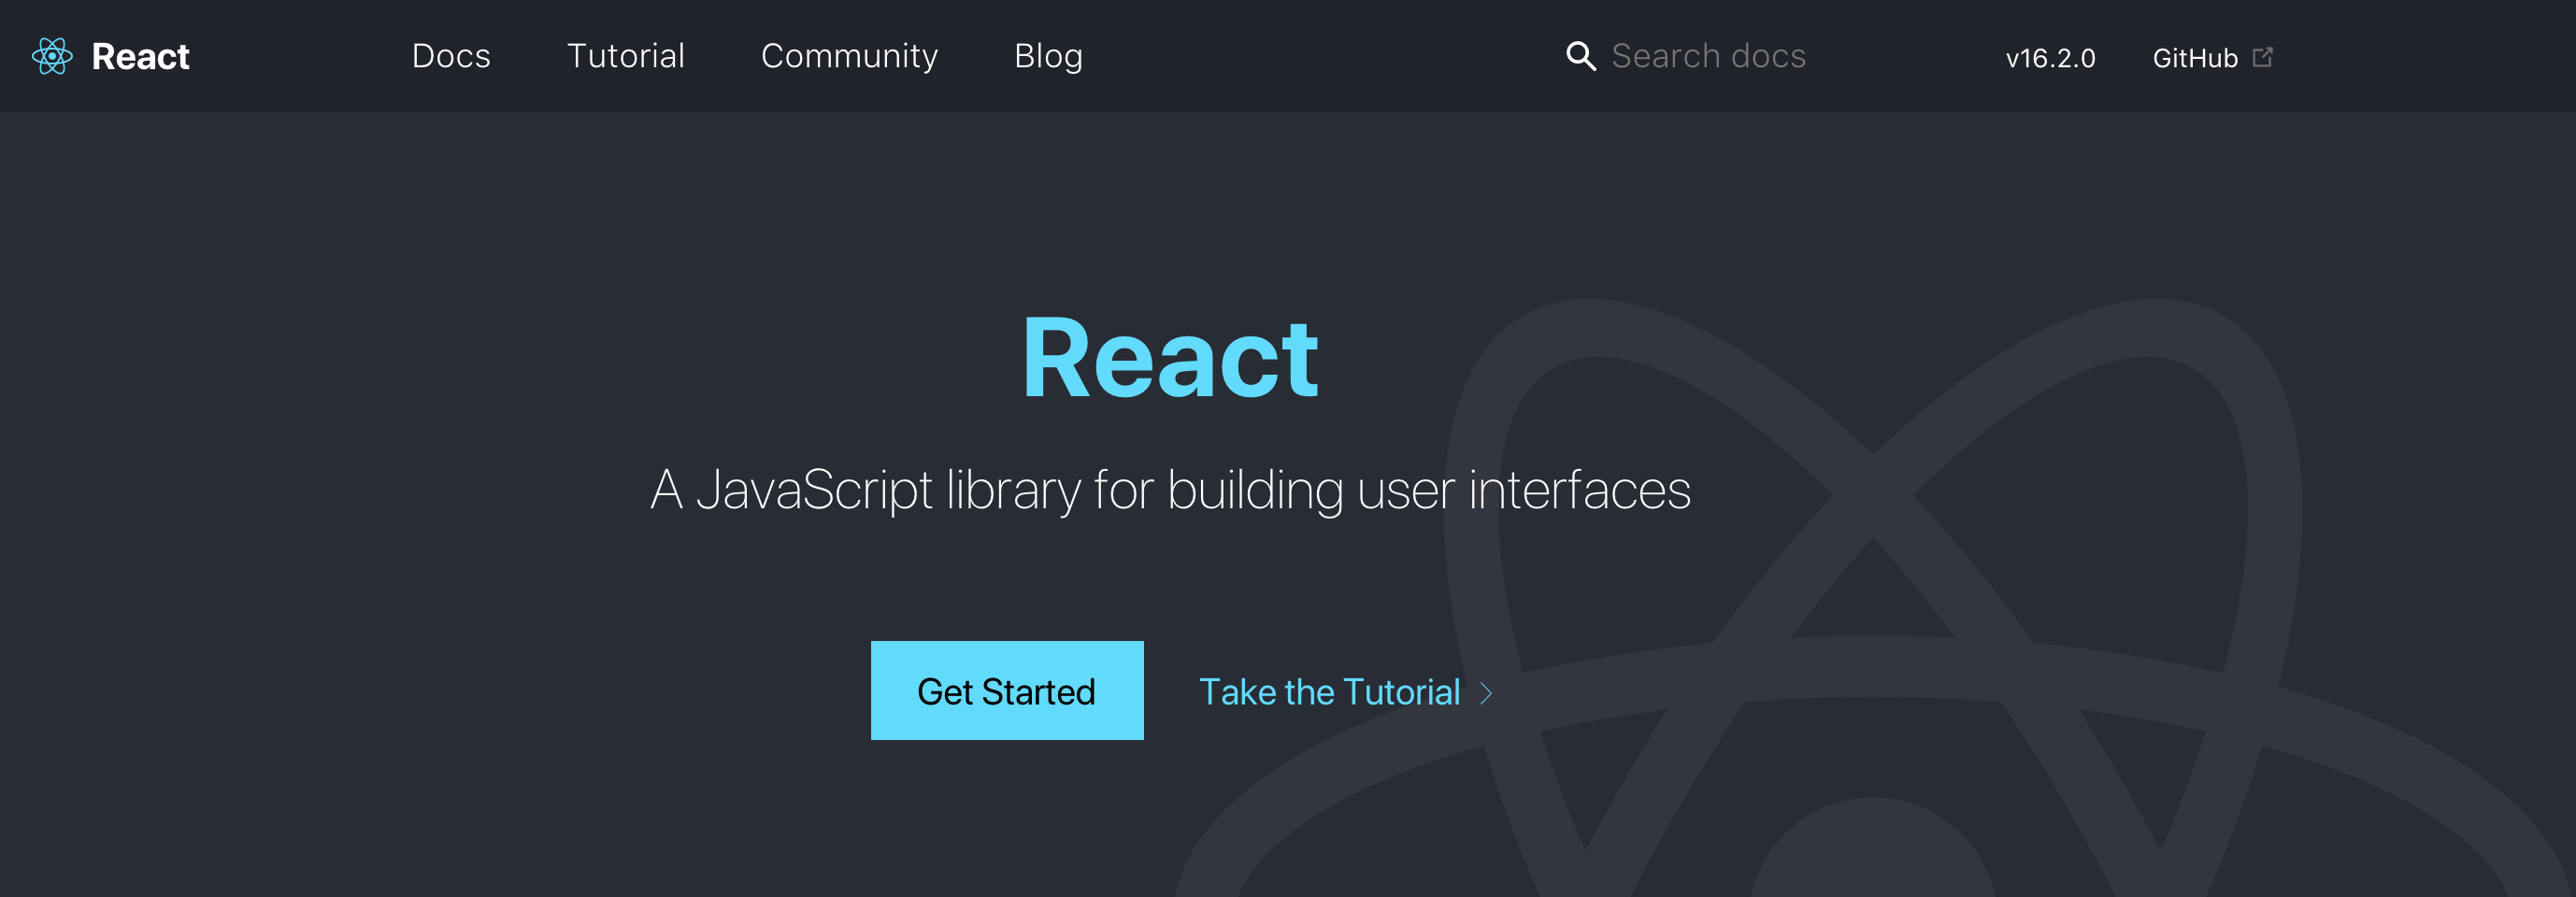 มาเริ่มต้นเขียน React ด้วย Create React App กันดีกว่า